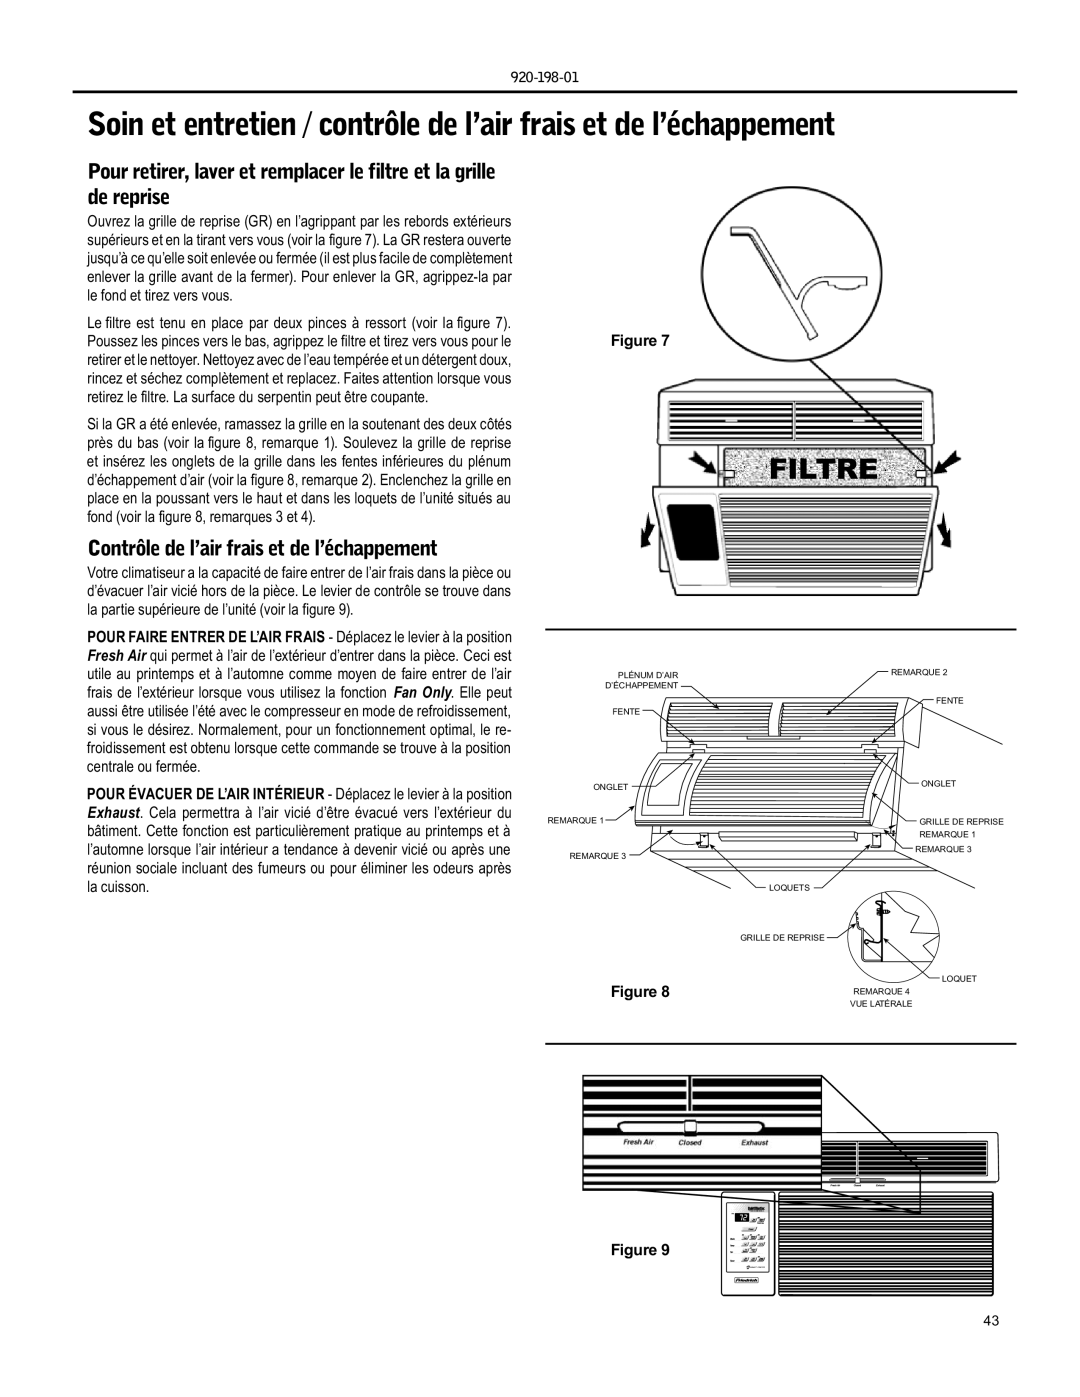 Friedrich YS09 operation manual Filtre, Contrôle de l’air frais et de l’échappement 